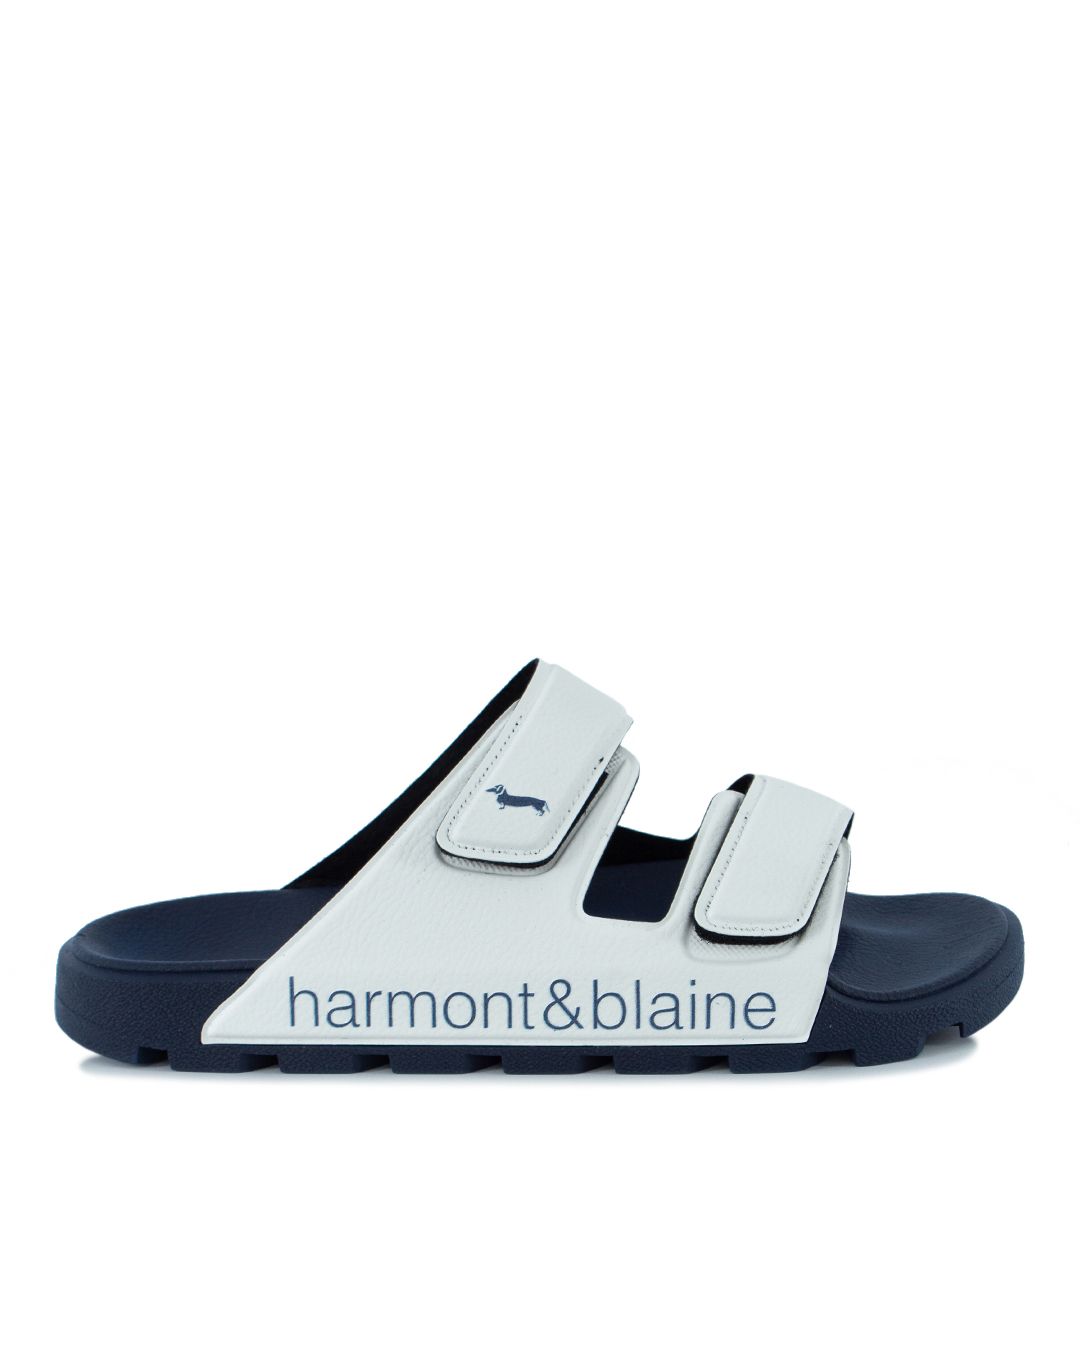 Harmont & Blaine с логотипом бренда  артикул EFM231.140.510 марки Harmont & Blaine купить за 14700 руб.